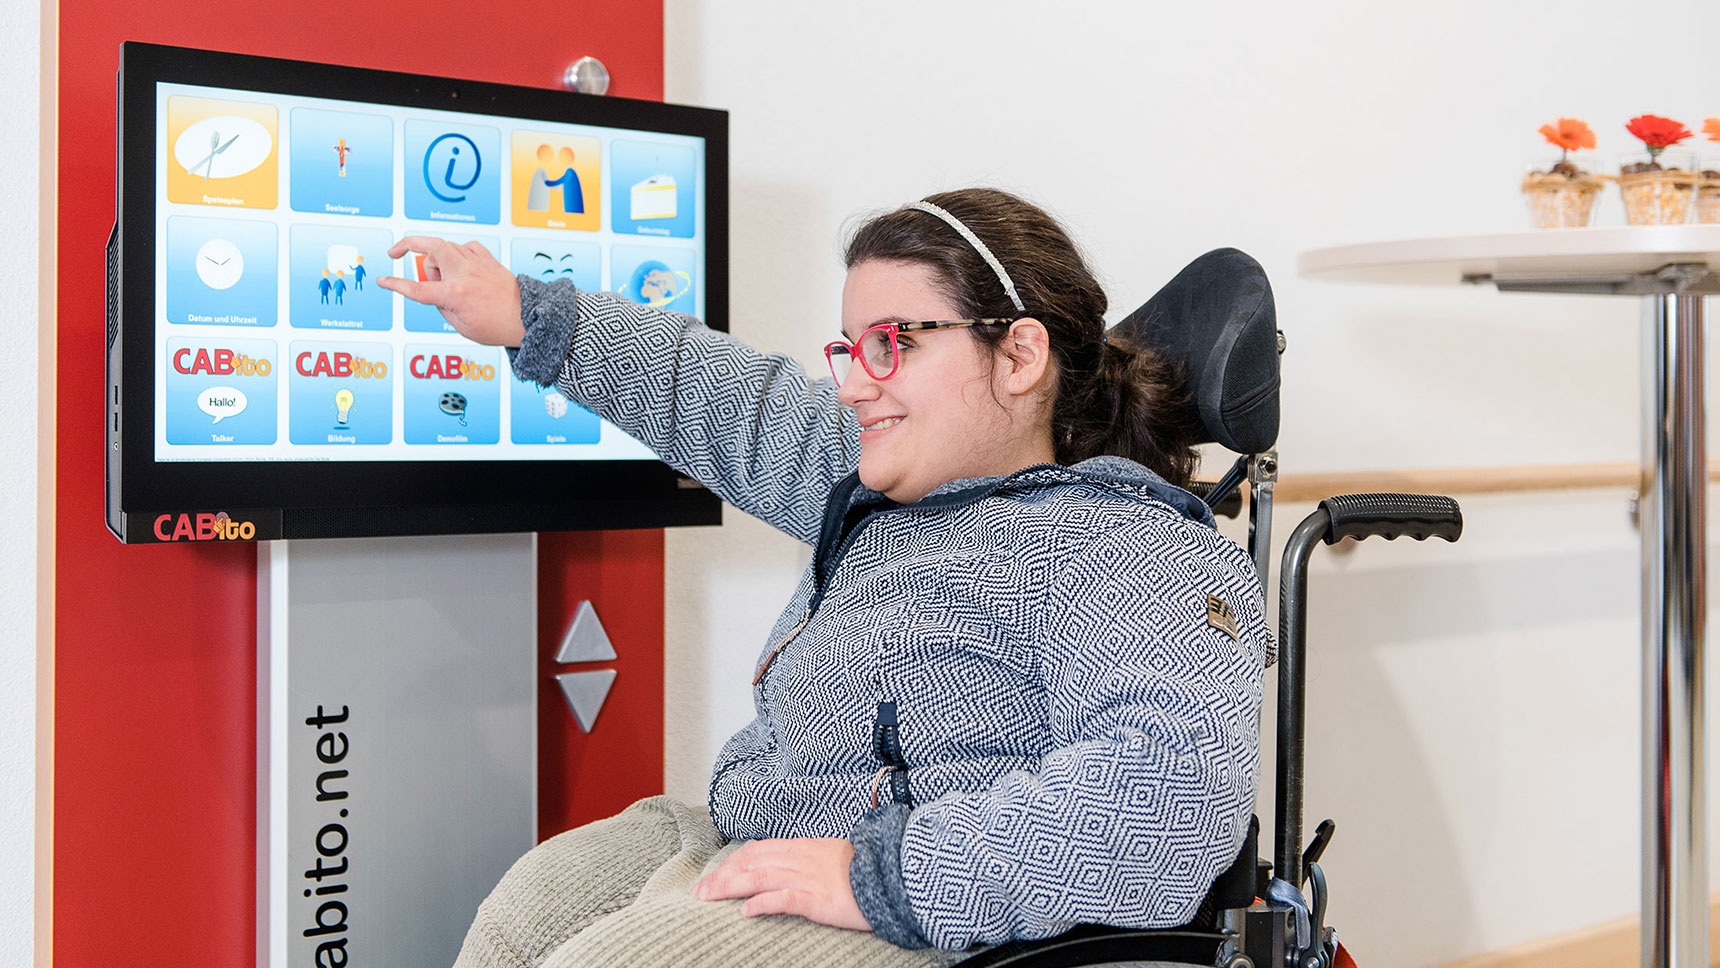 Junge Frau im Rollstuhl bedient Info-Terminal mit Touch-Display.